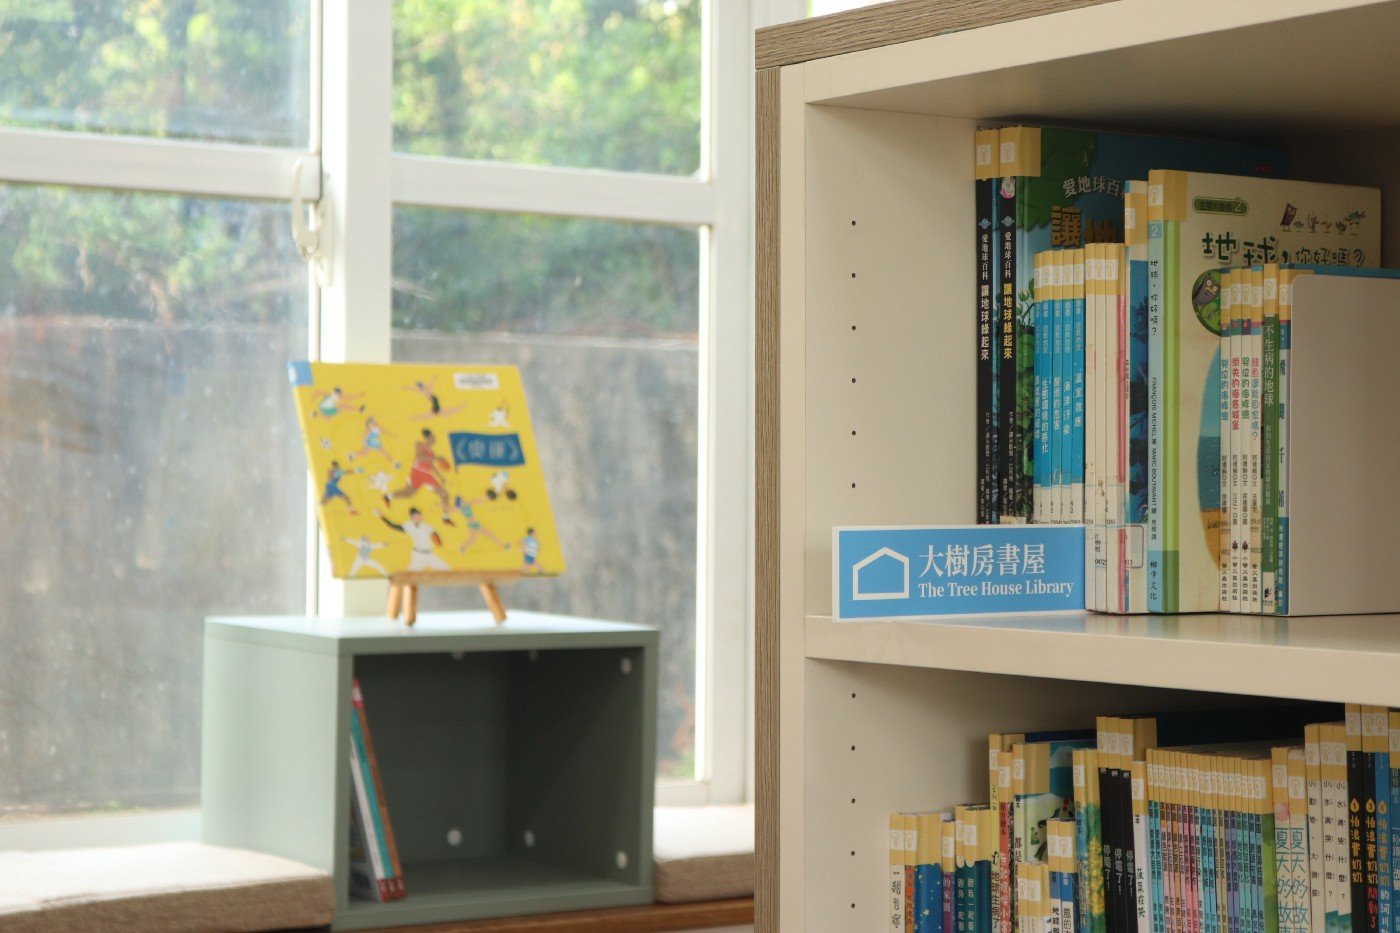 書背上貼著分類的圖示，搭配自己的專屬書插，孩子能輕易找到歸還書籍的地方。